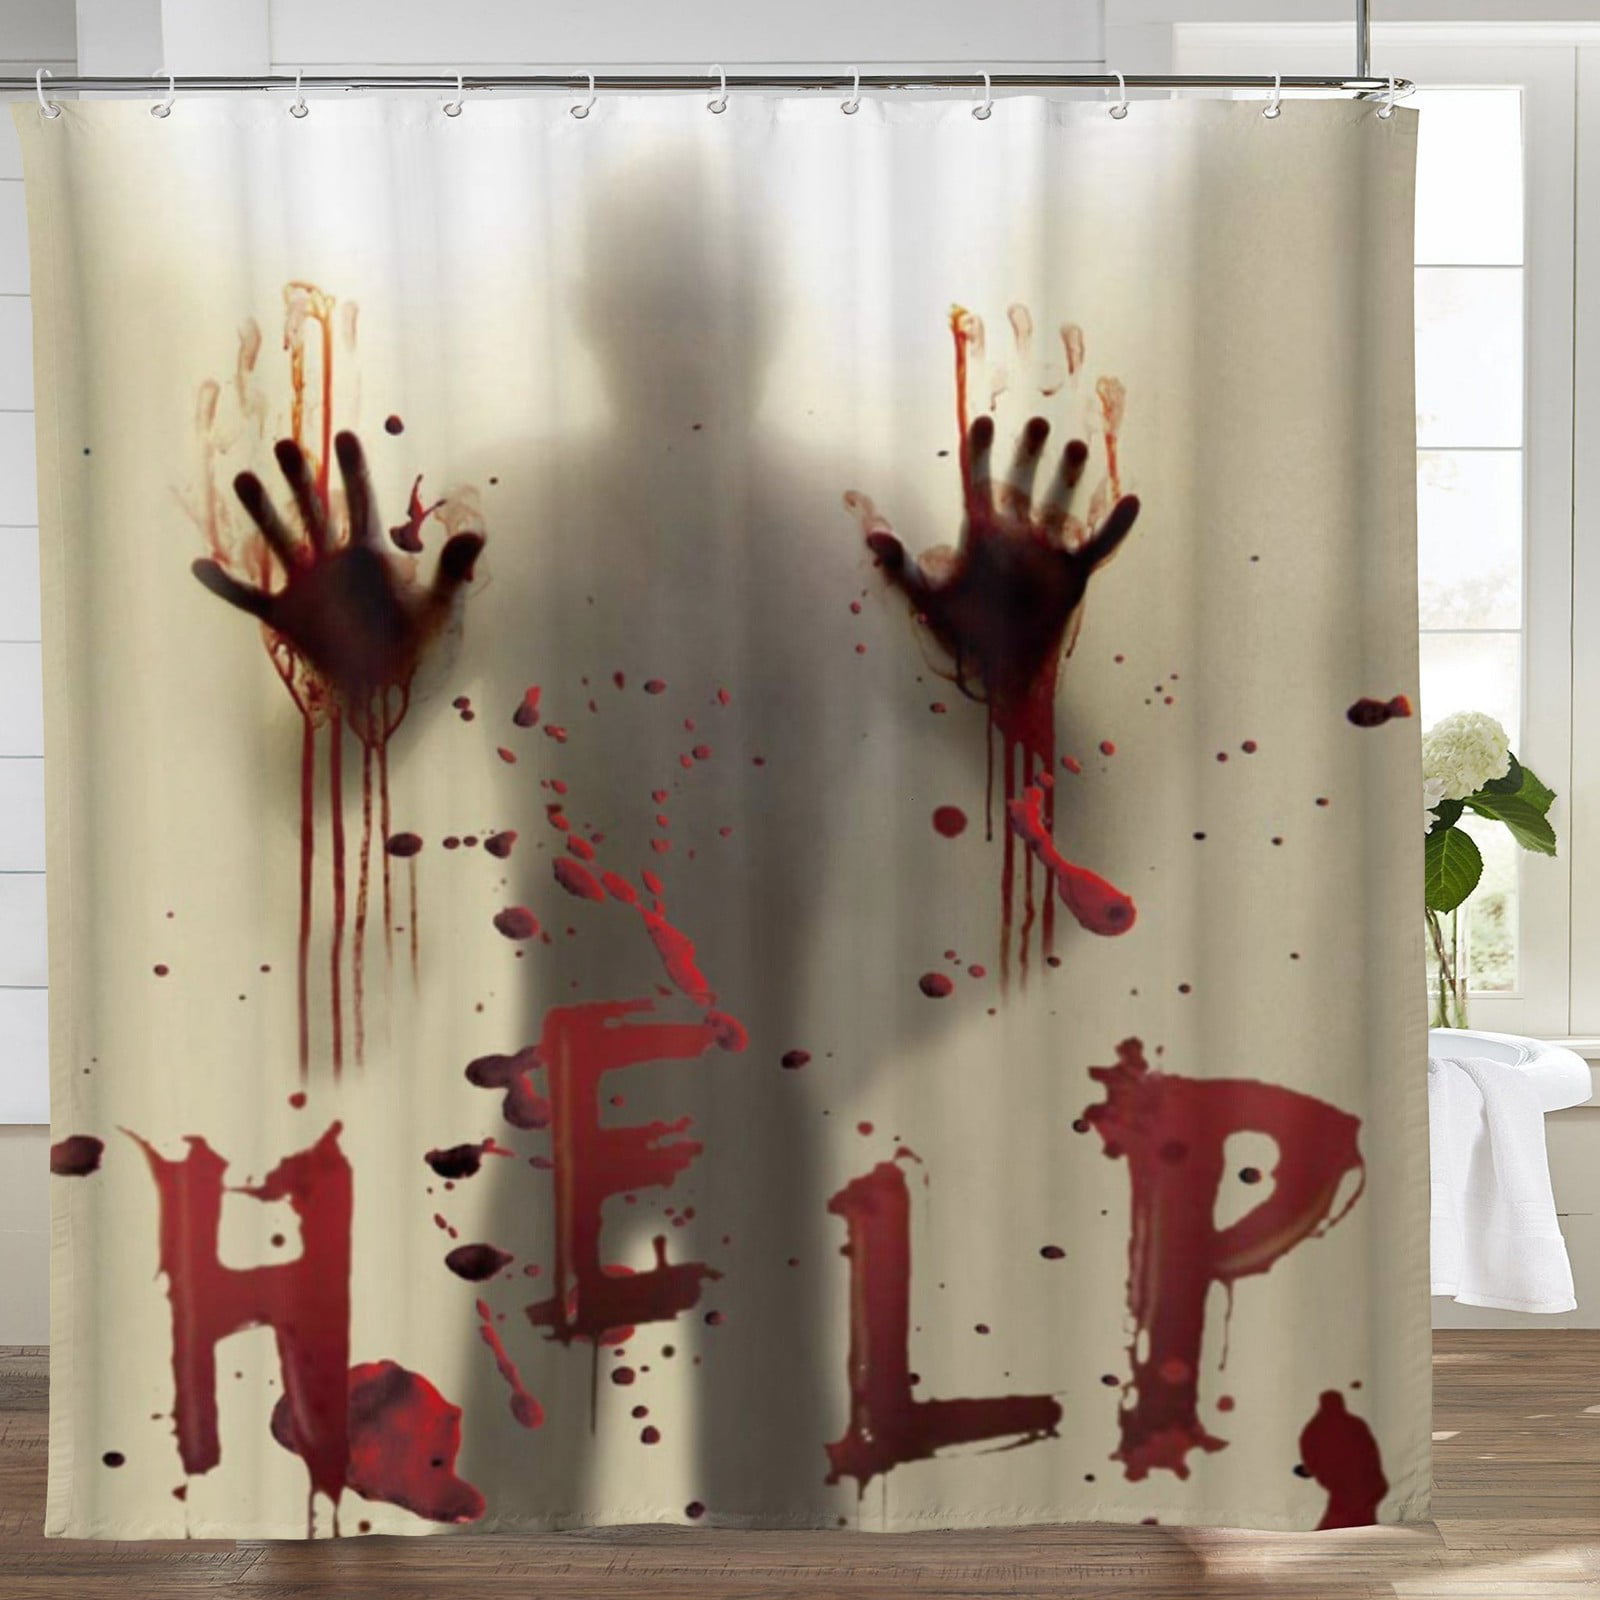 Bloody Shower Curtain 70x72" Bathroom Scary Decor Bath Tub Fun Cool Halloween 